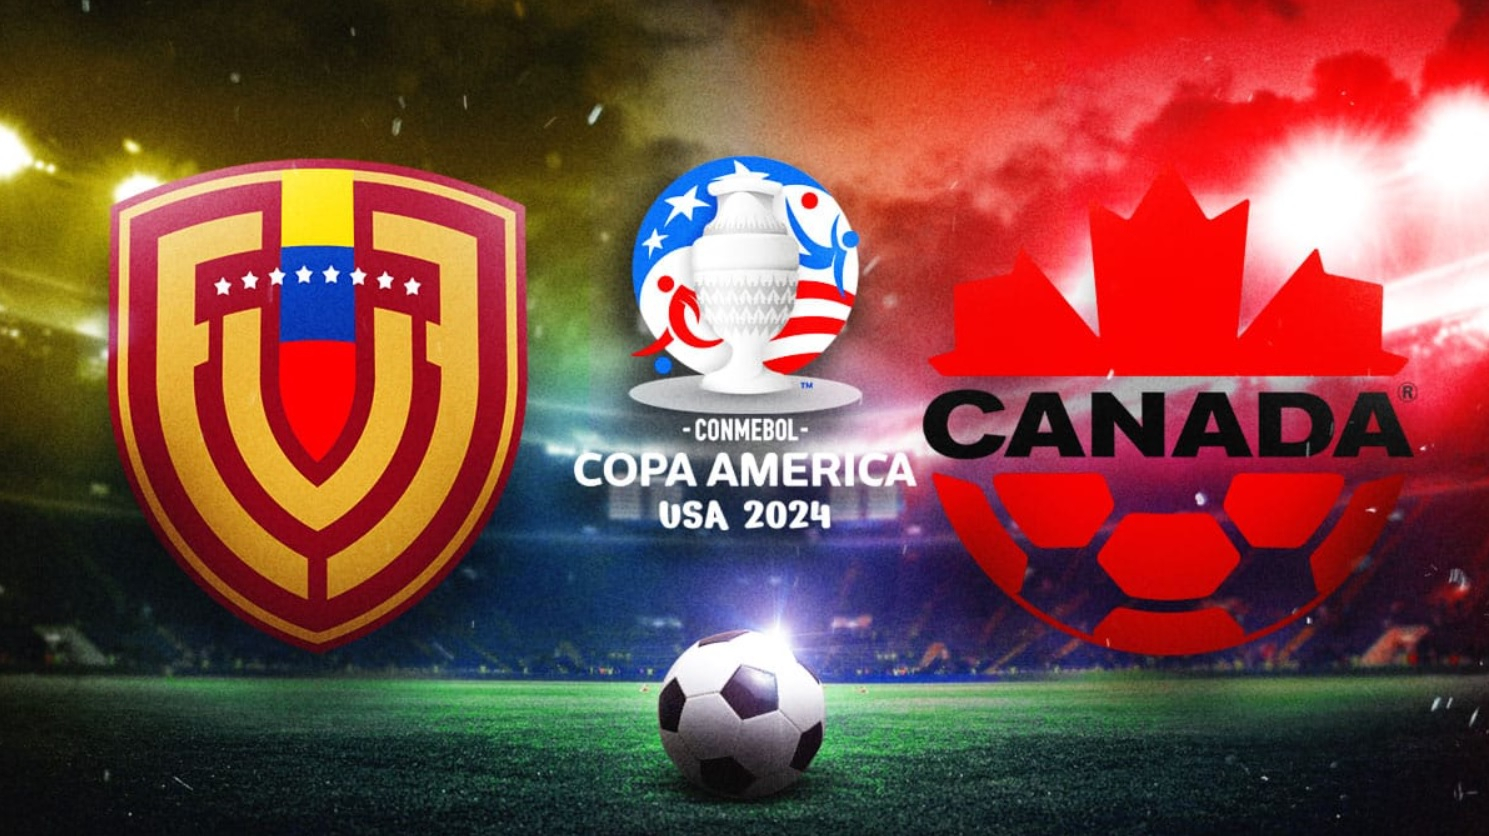 Venezuela national football team Canada 2024 Copa América 